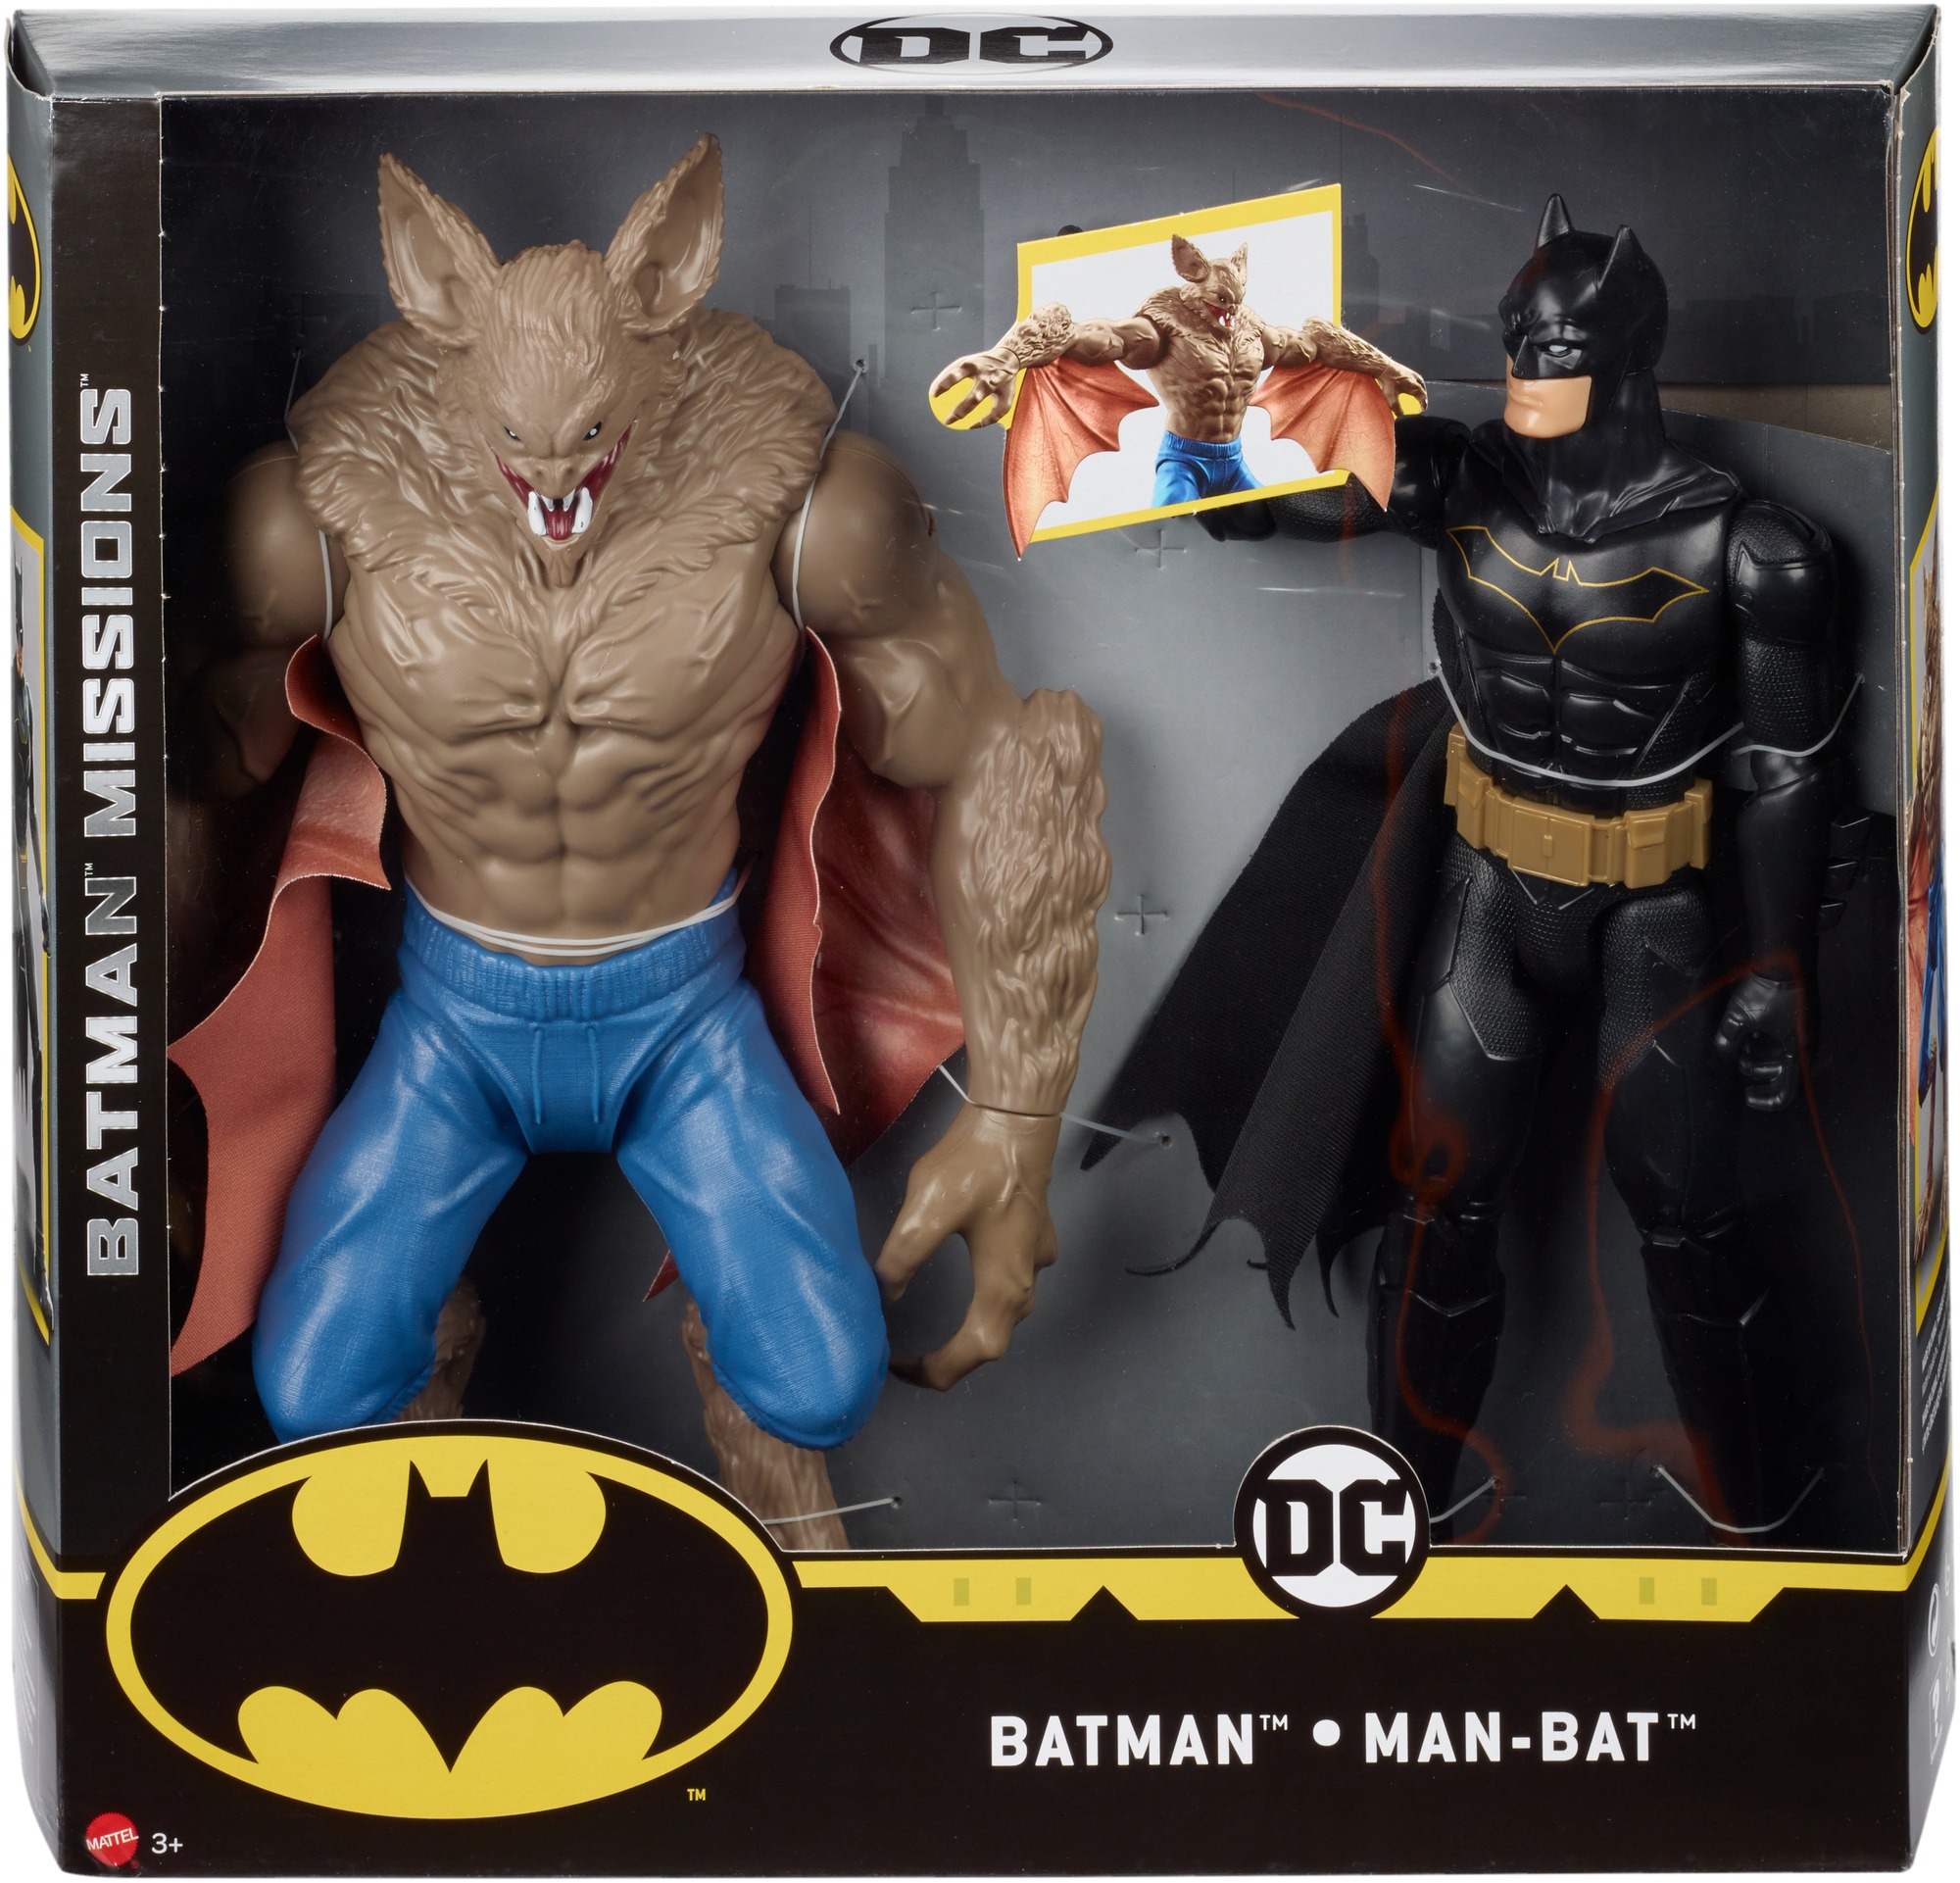 dc comics batman missions